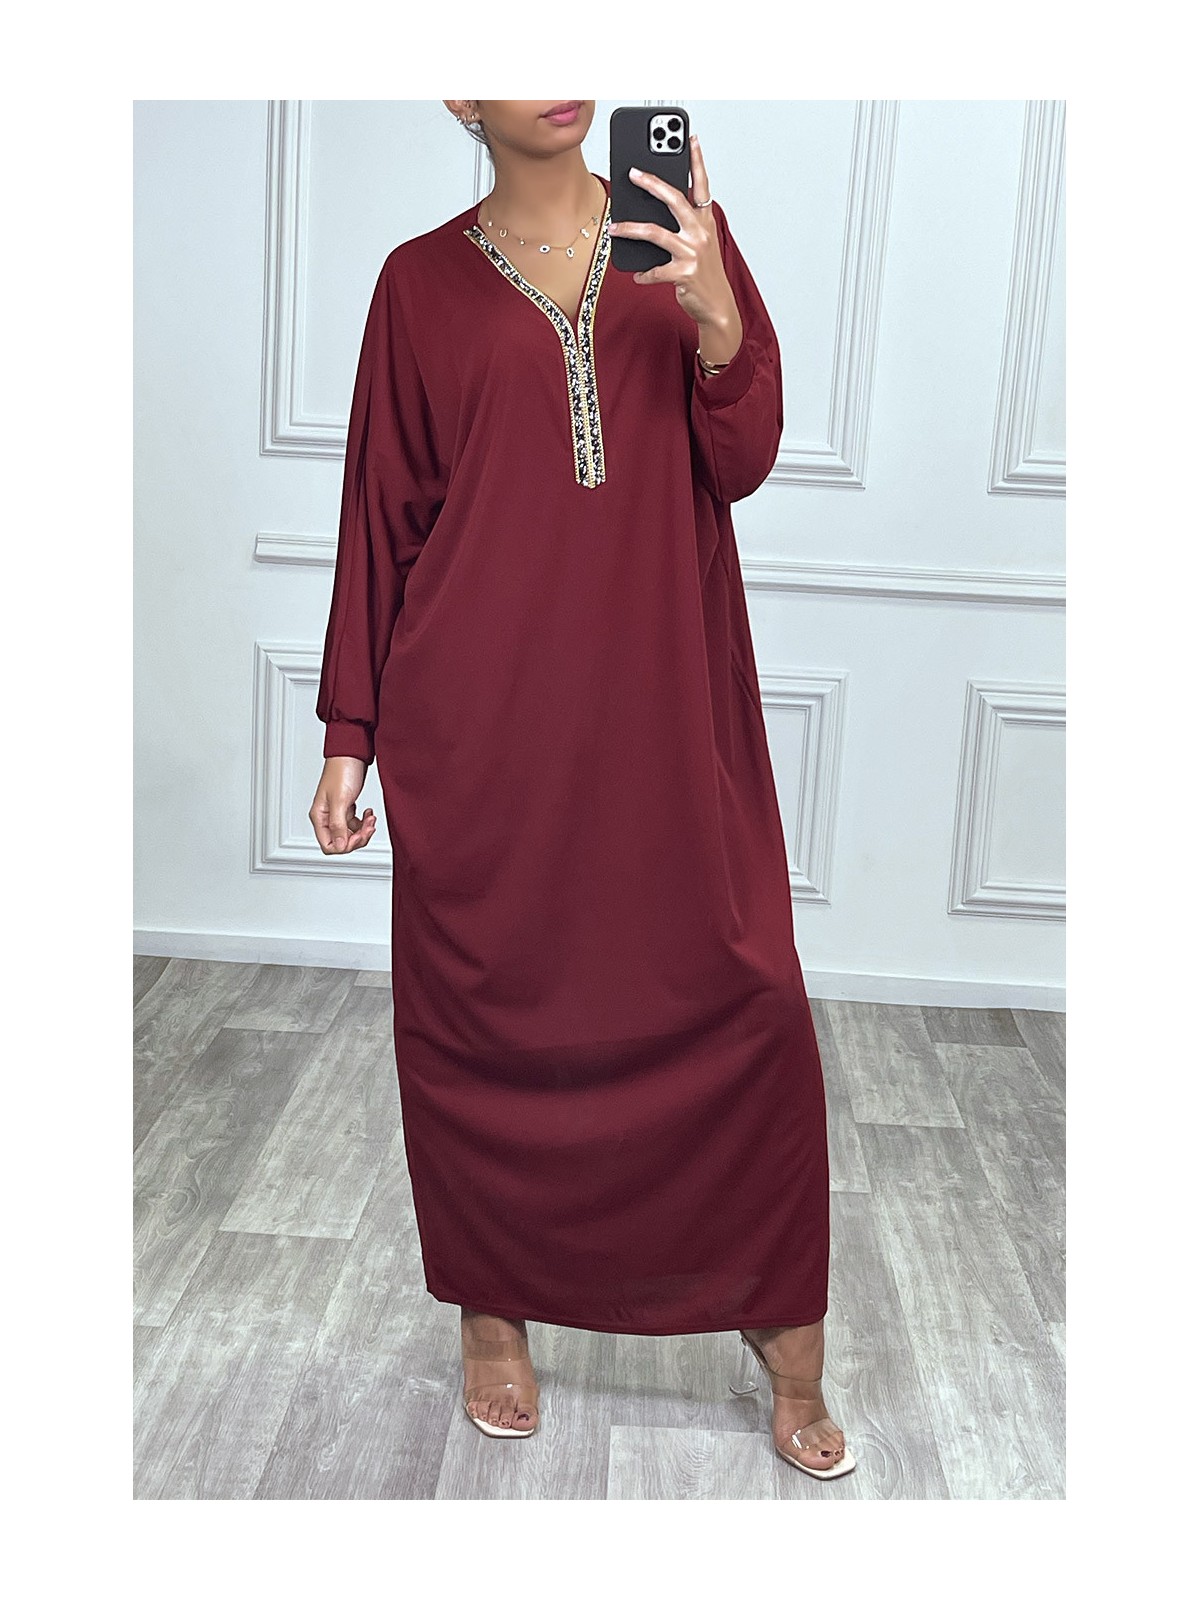 Abaya bordeaux à encolure de strass et manches longues - 1